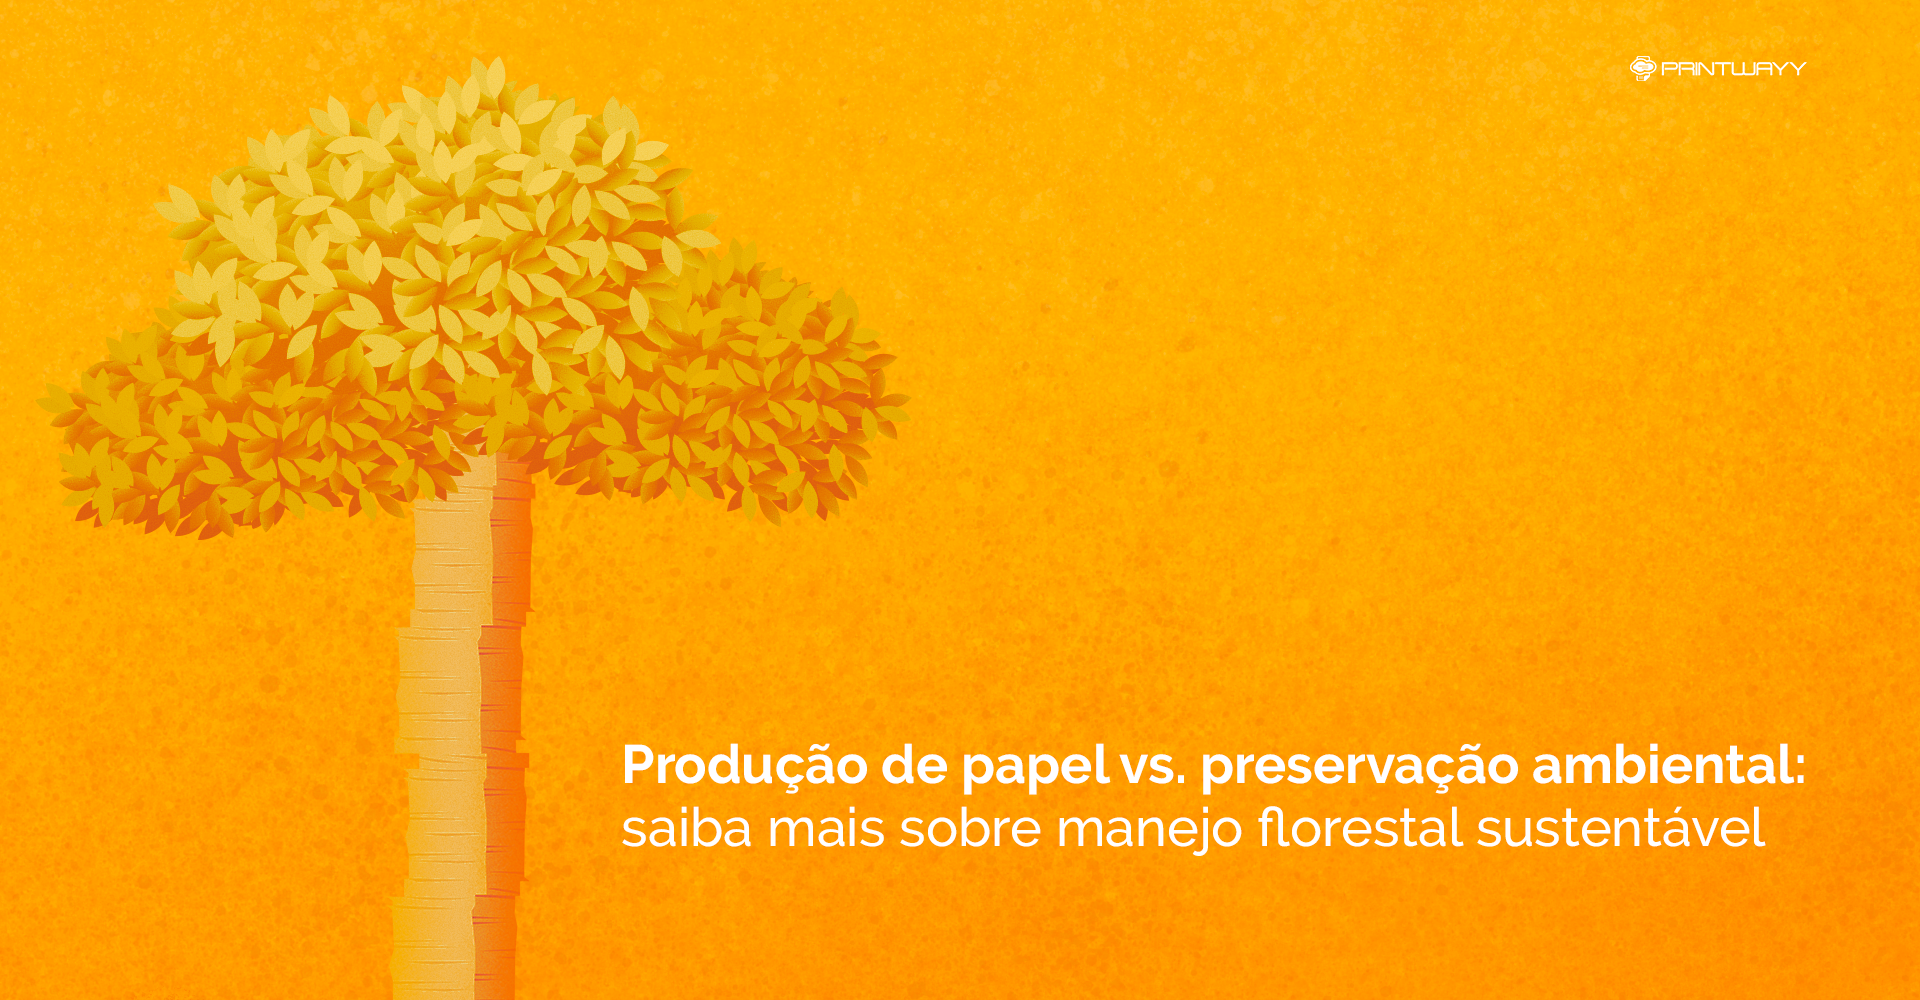 Ilustração de uma árvore, com o seu tronco constituído por uma pilha de papel, simbolizando o manejo florestal sustentável.